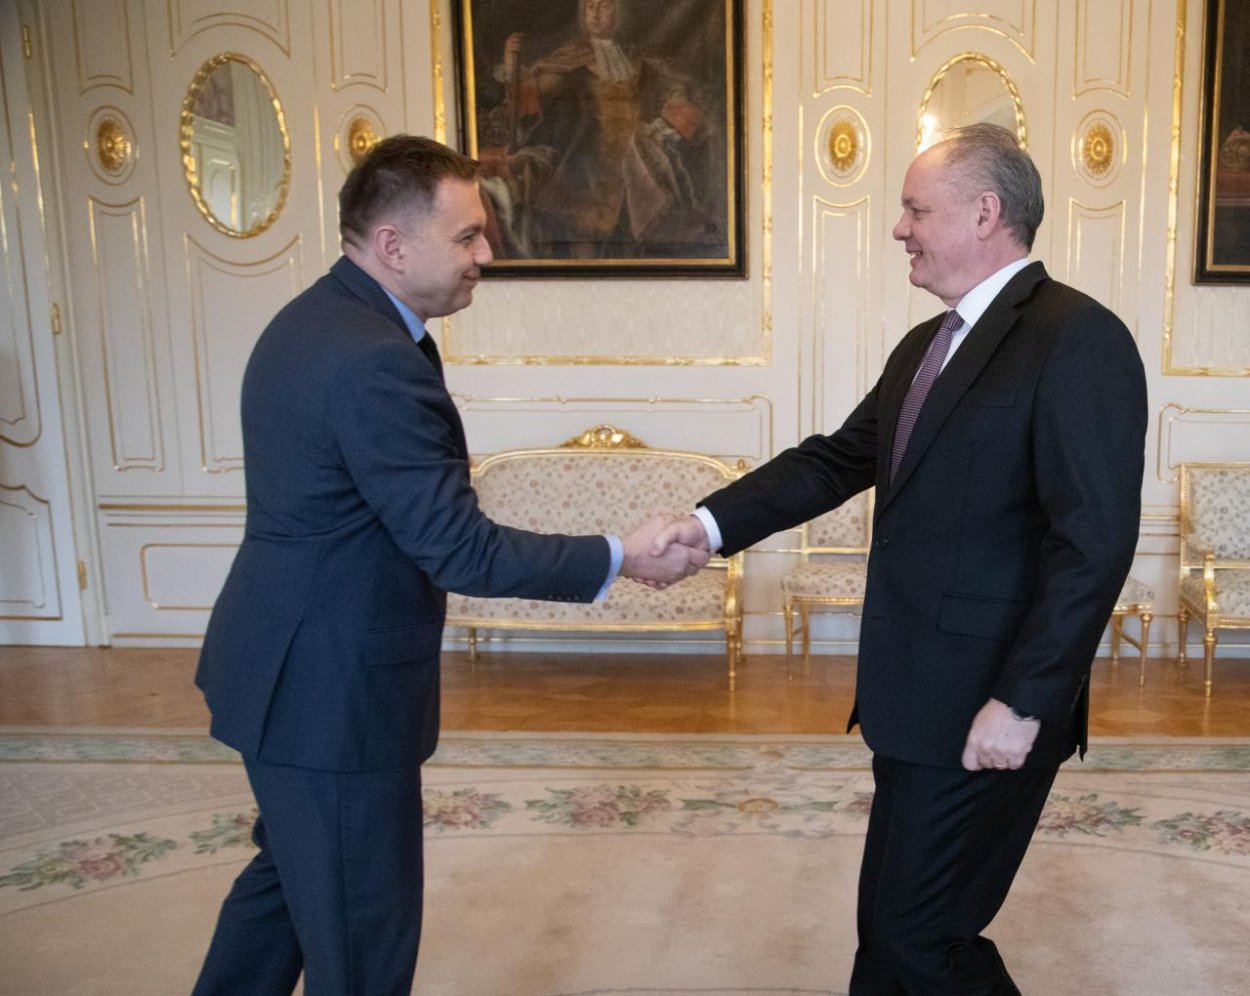 Prezident Andrej Kiska vymenoval ministra financií Petra Kažimíra do funkcie guvernéra NBS